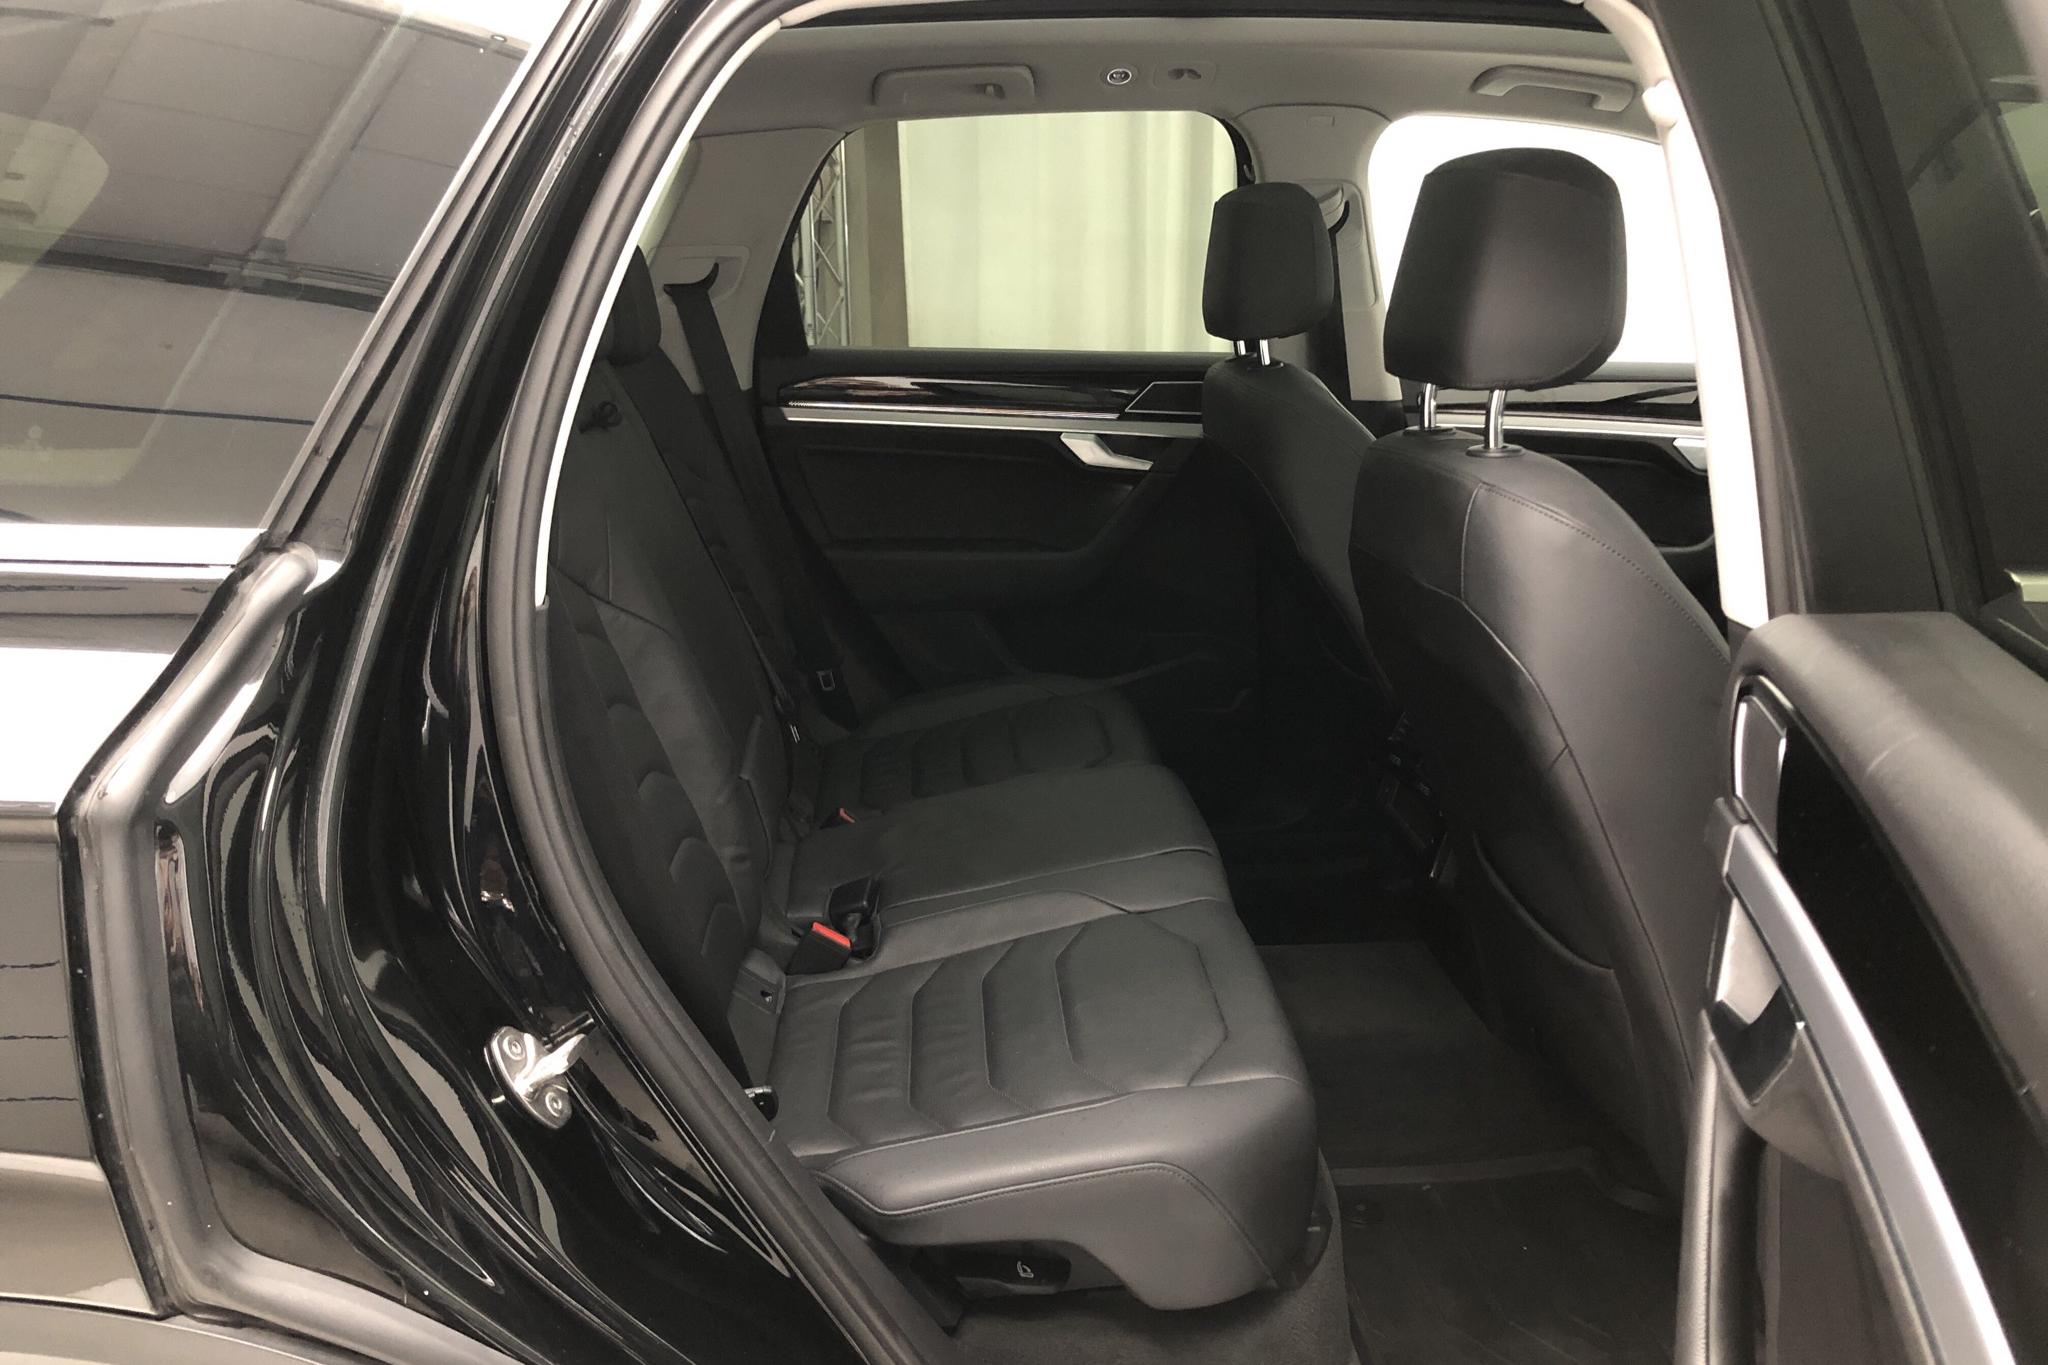 VW Touareg V6 TDI 4Motion (286hk) - 8 942 mil - Automat - svart - 2019